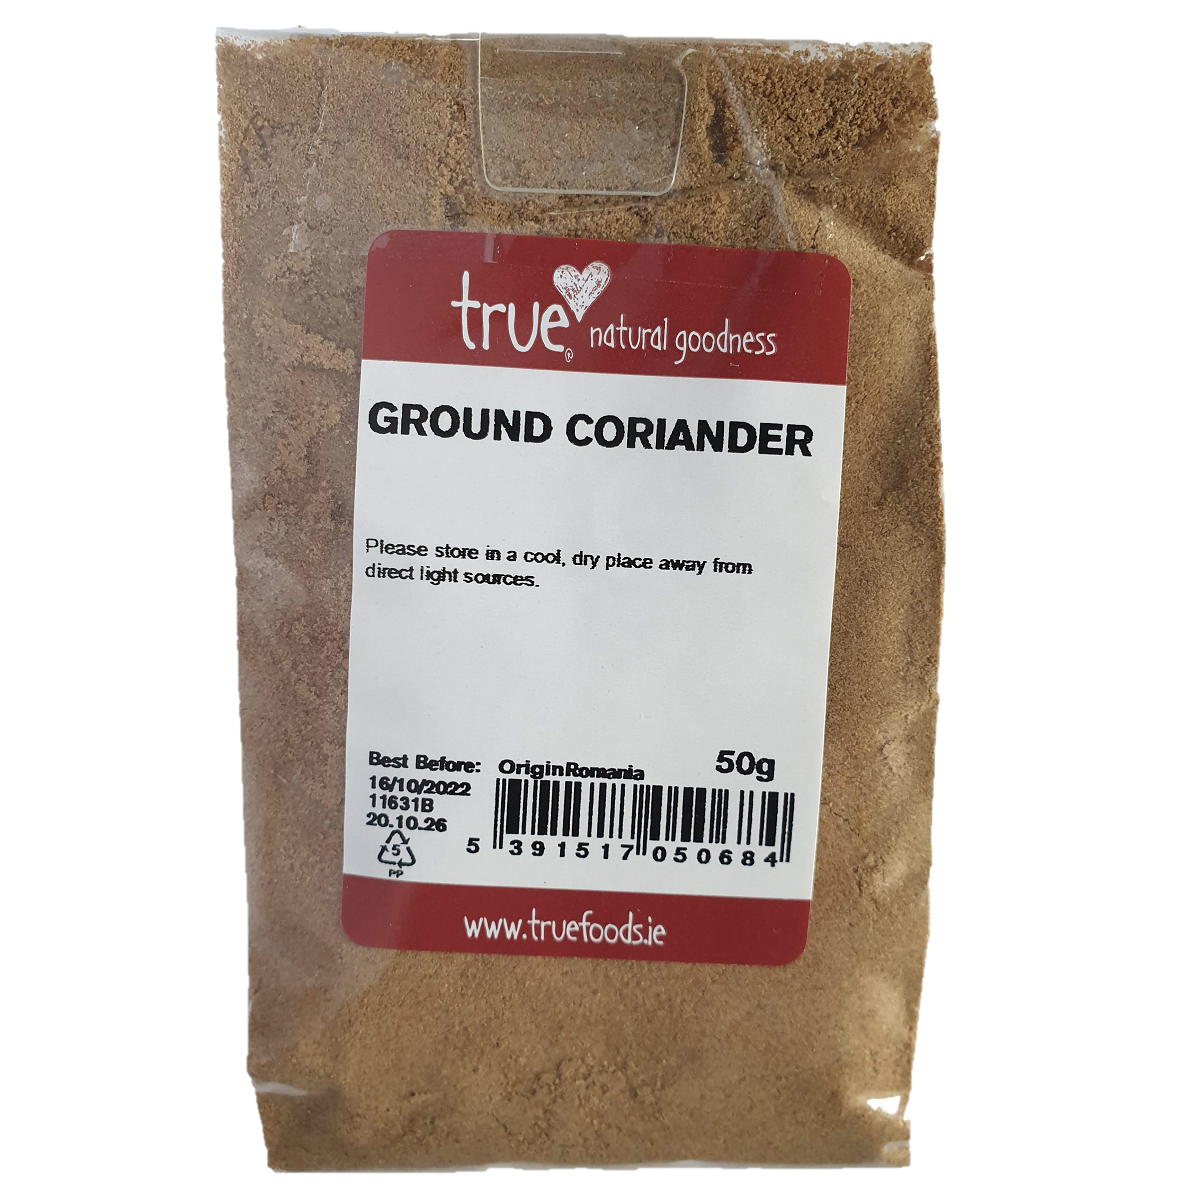 True Natural Goodness Ground Coriander 50g